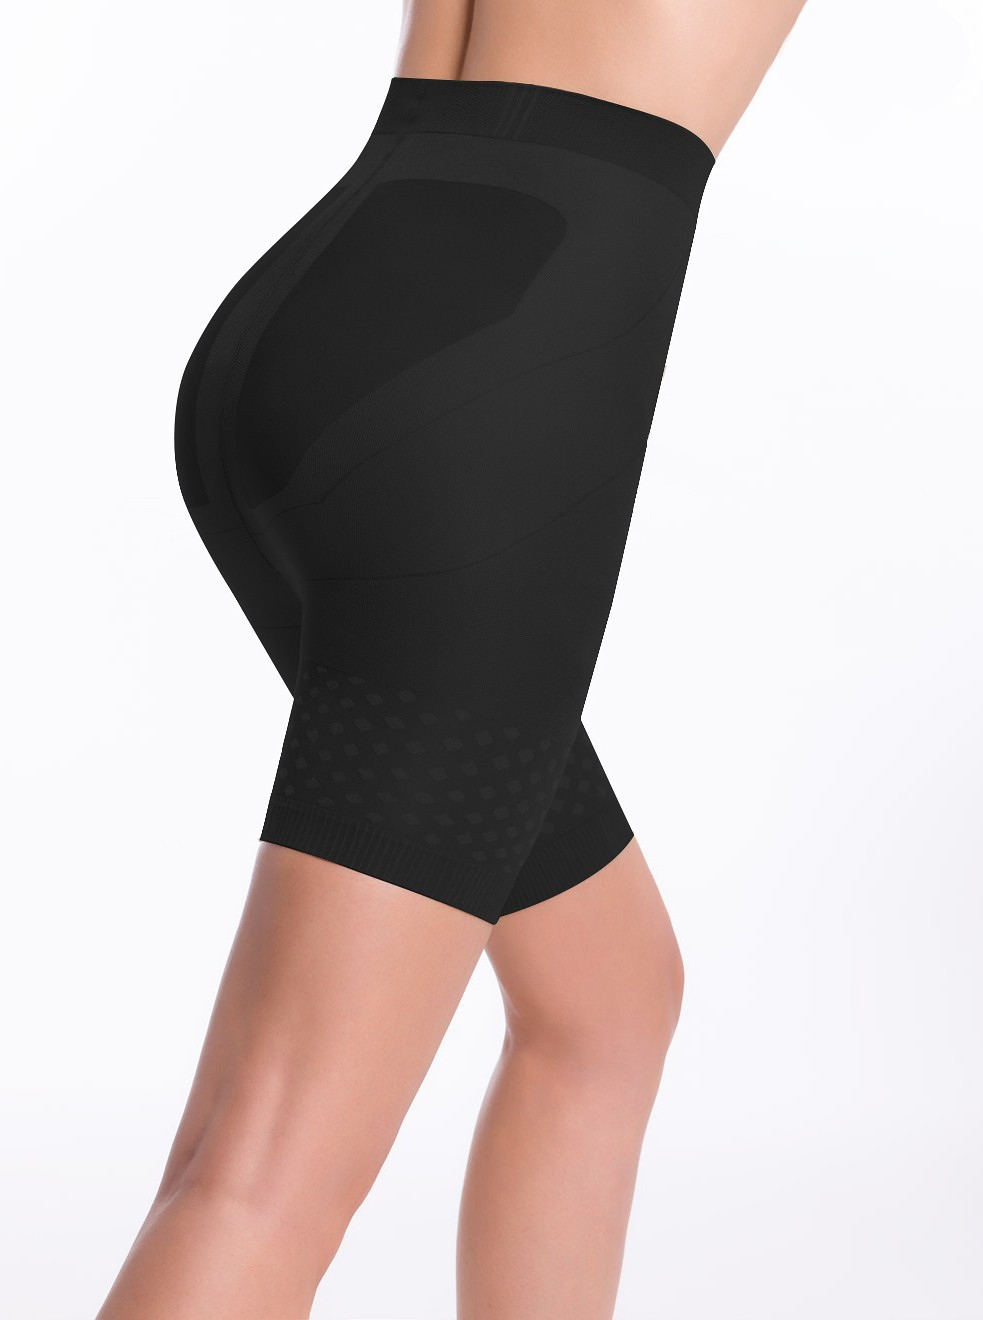 Levně Dámské kalhotky Panty Slim Up černá 2S model 9134822 - Envie